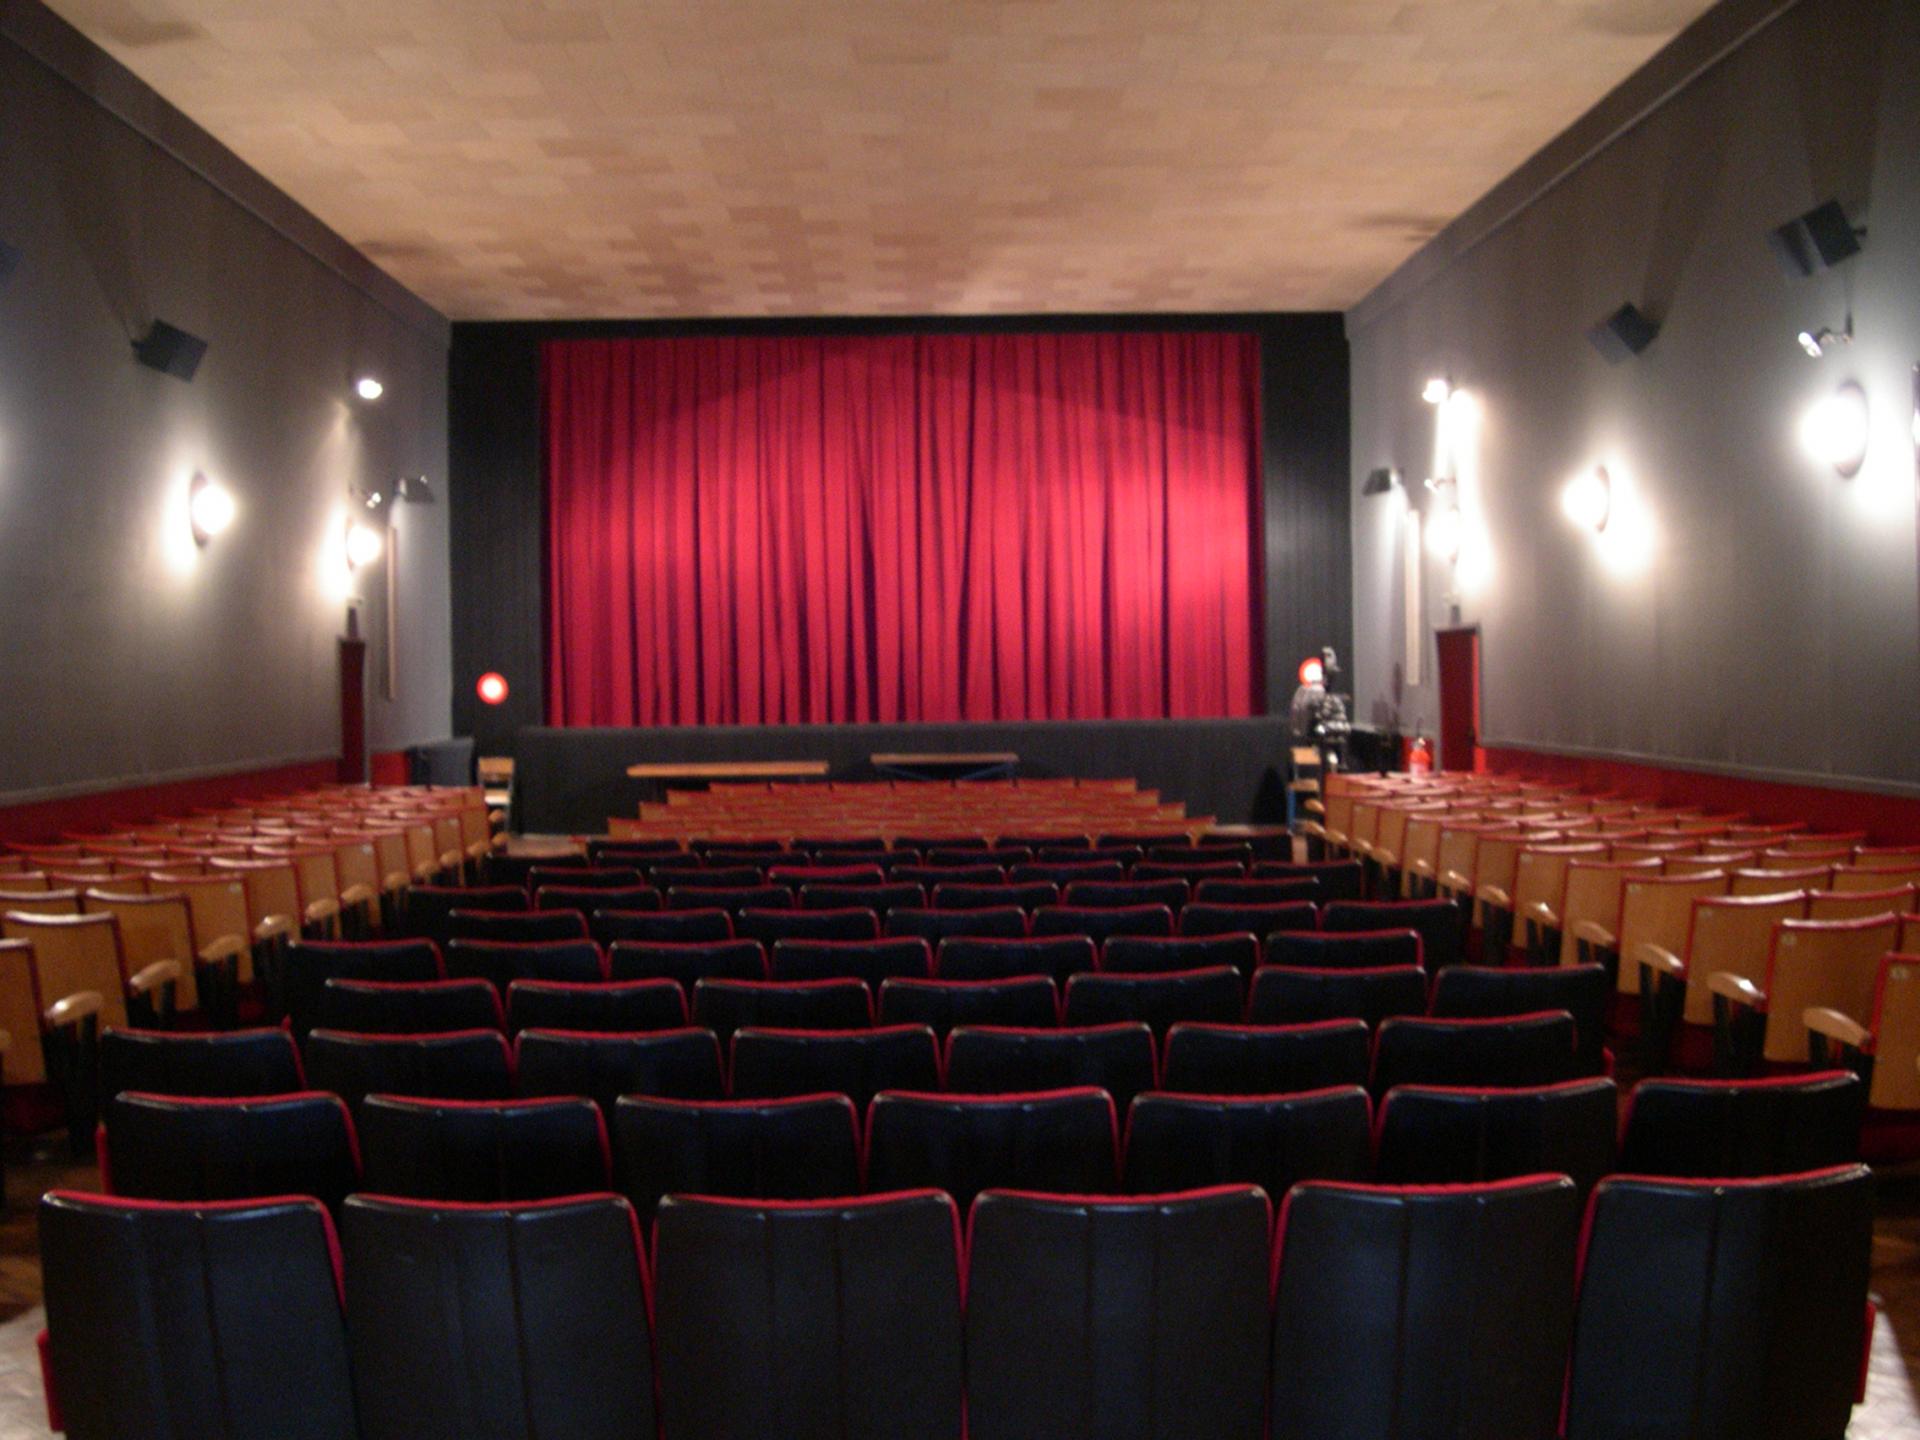 La salle de cinéma : 290 places - écran de 8 mètres - son Dolby Stéréo